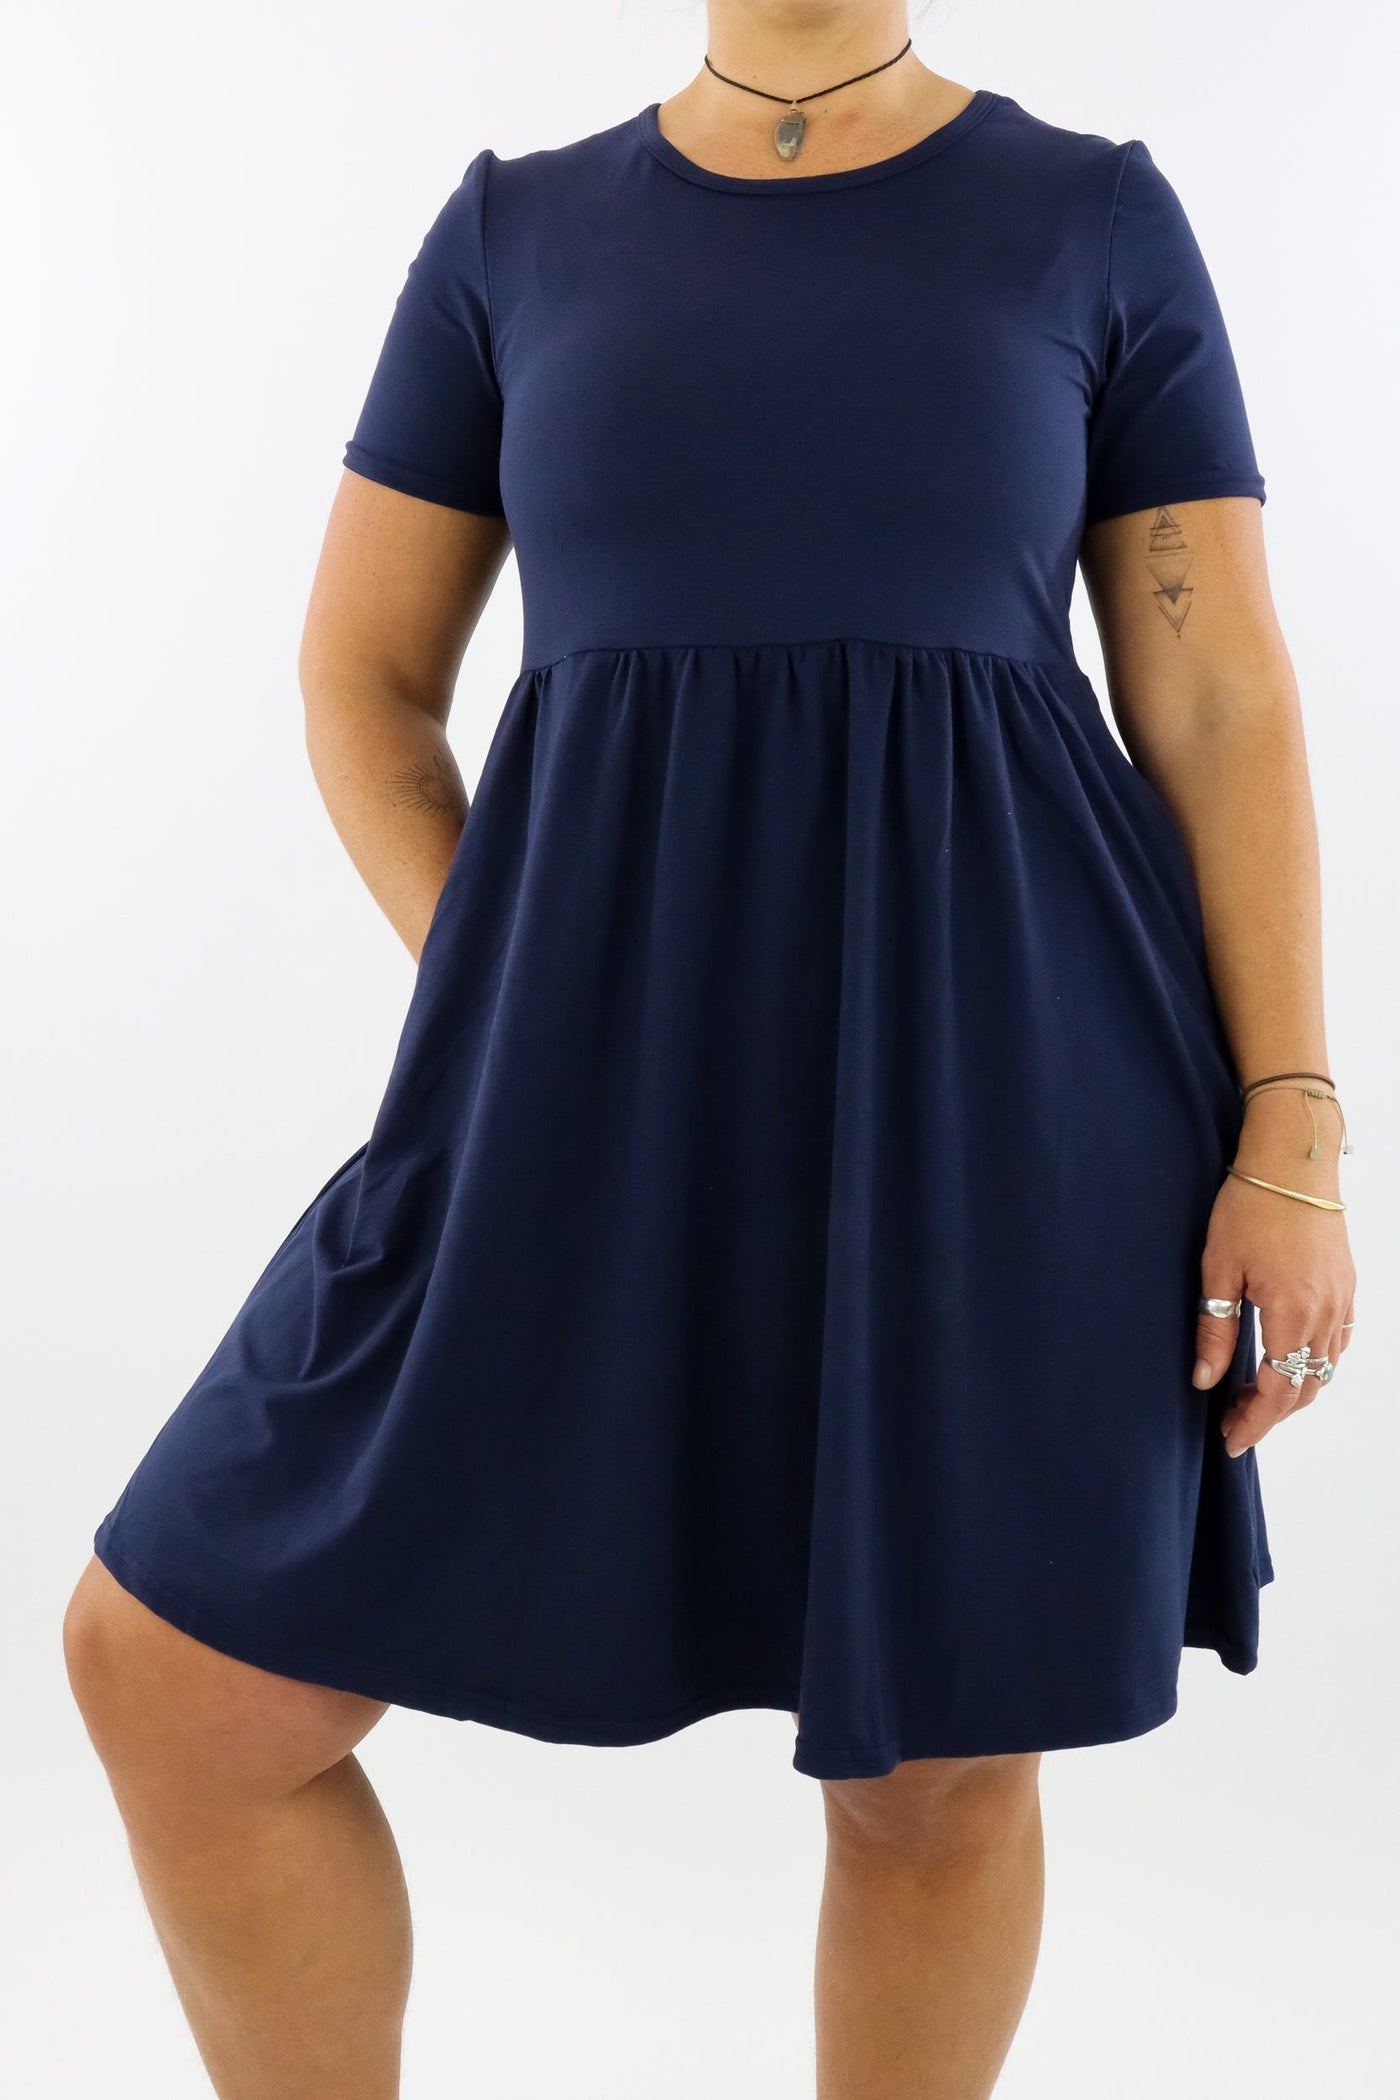 Navy - Short Sleeve Skater Dress - Knee Length - Side Pockets Knee Length Skater Dress Pawlie   